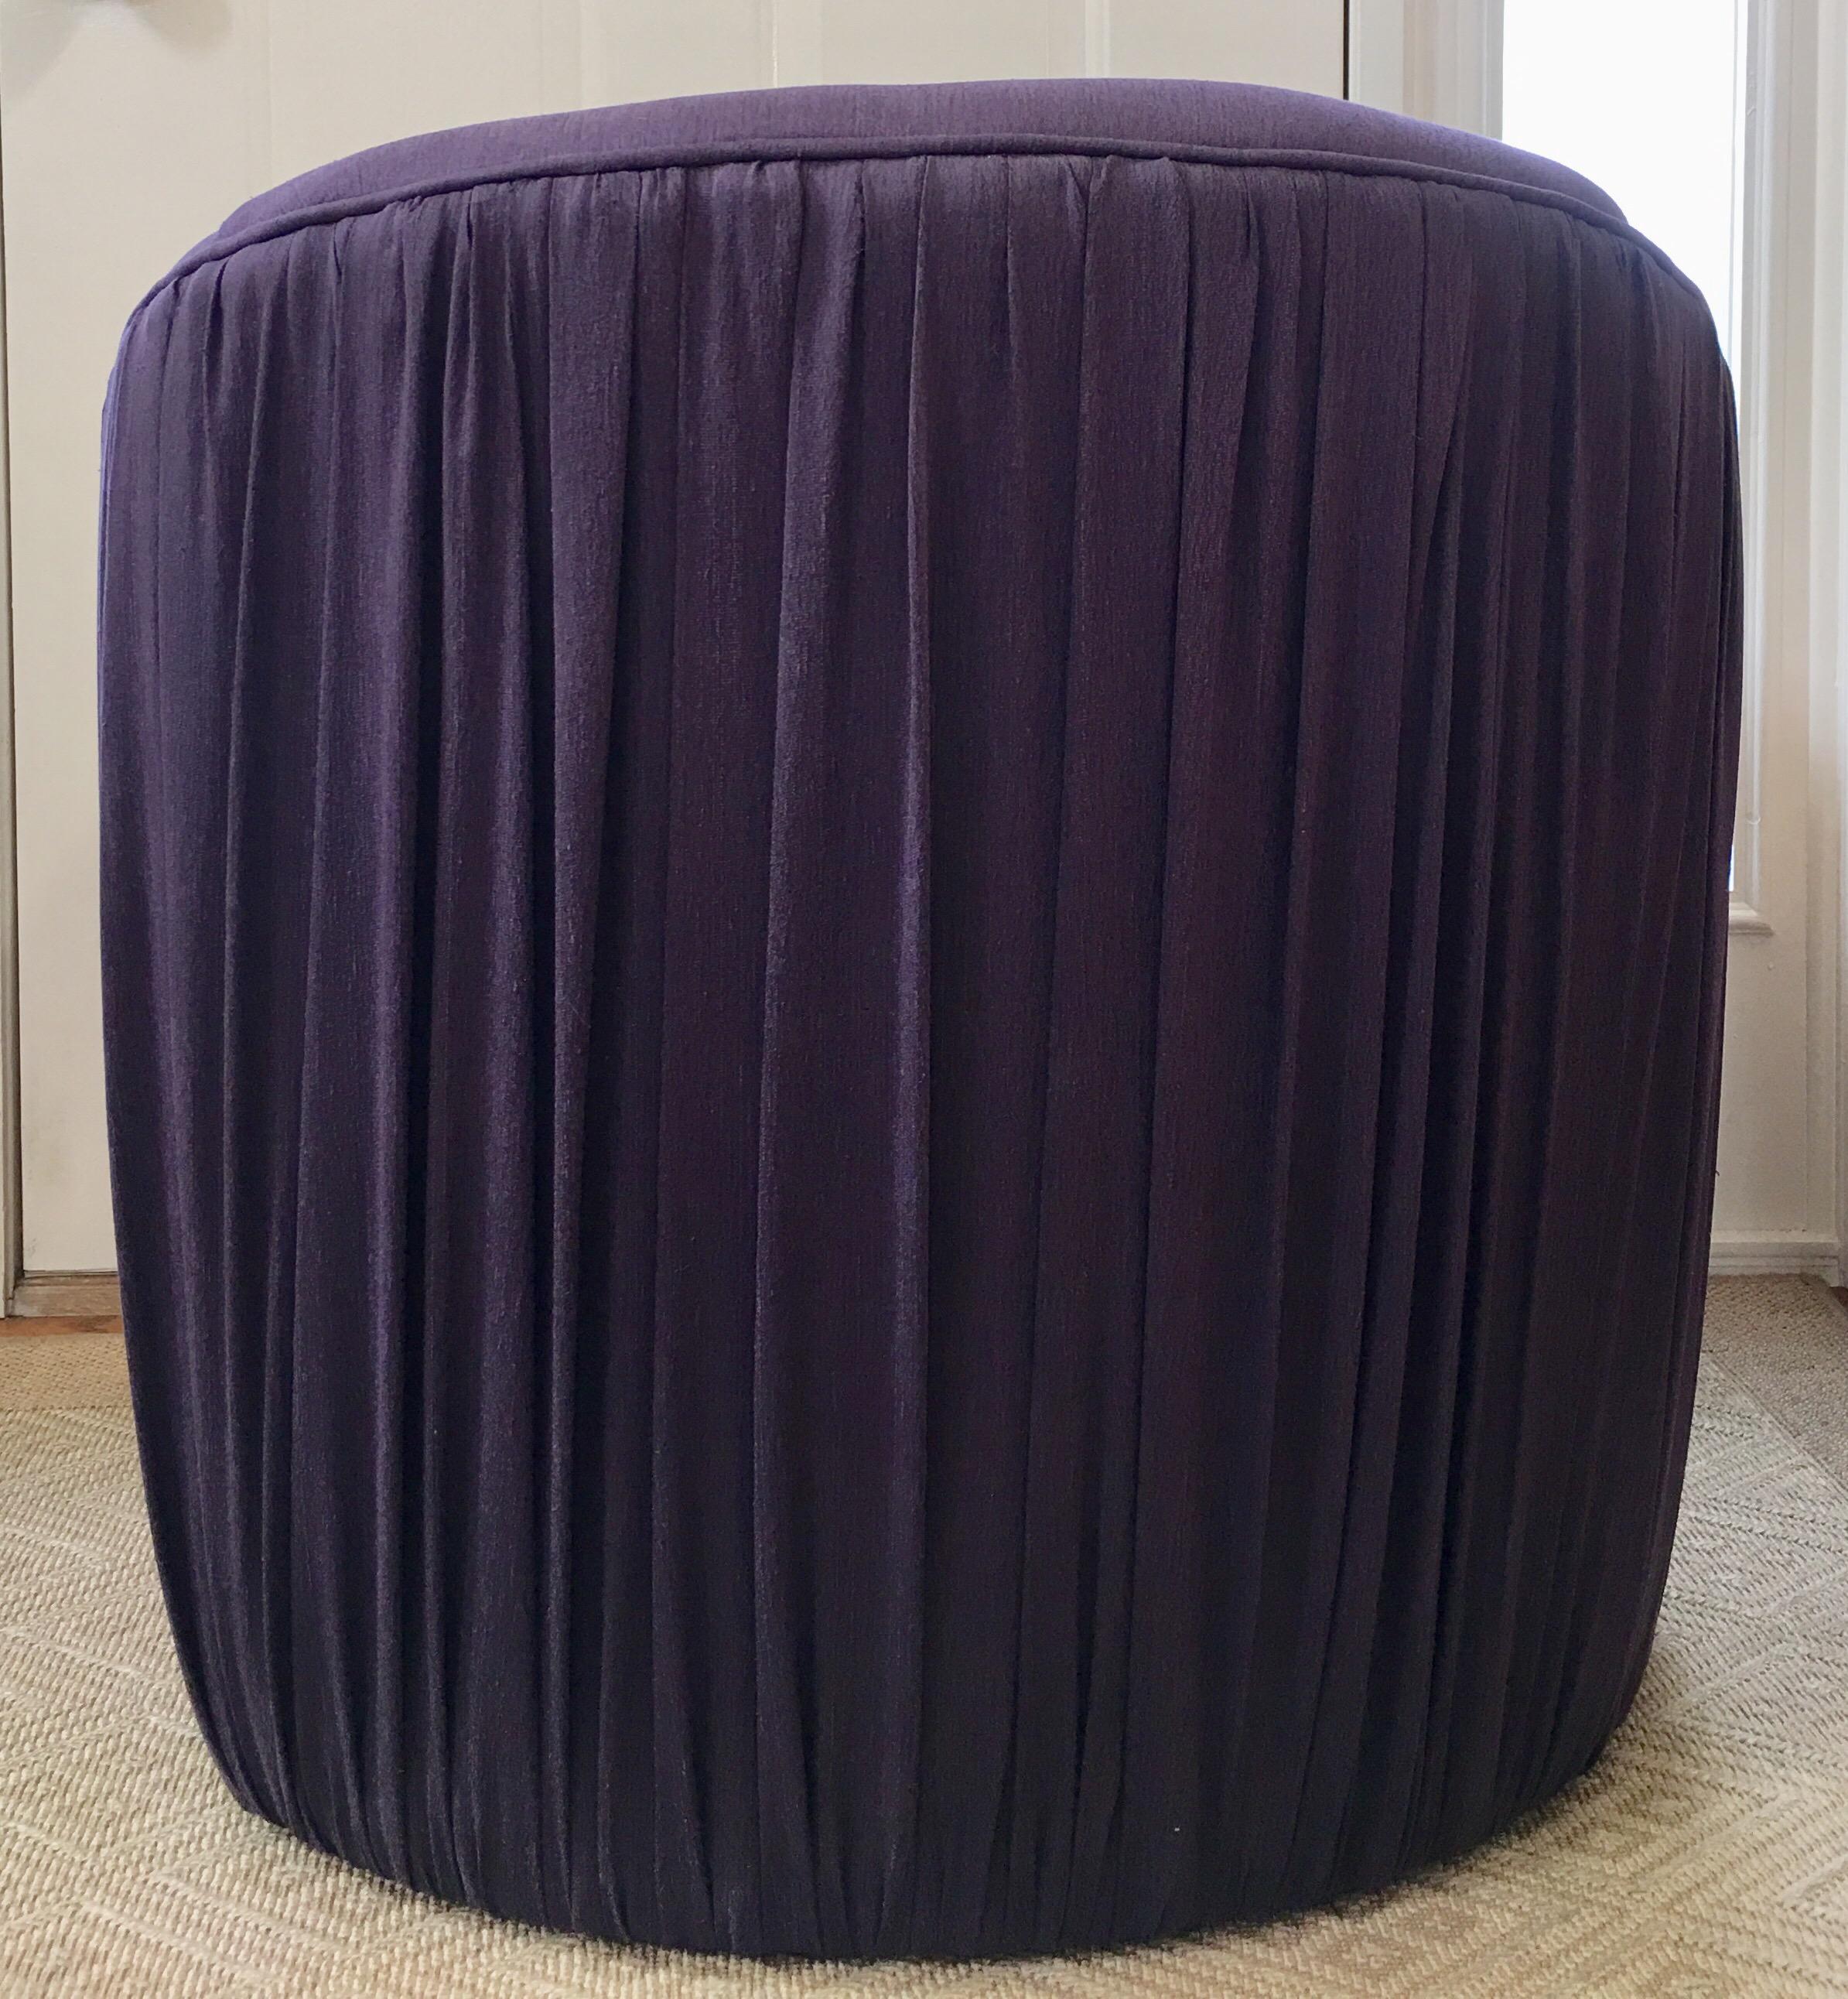 purple pouf ottoman